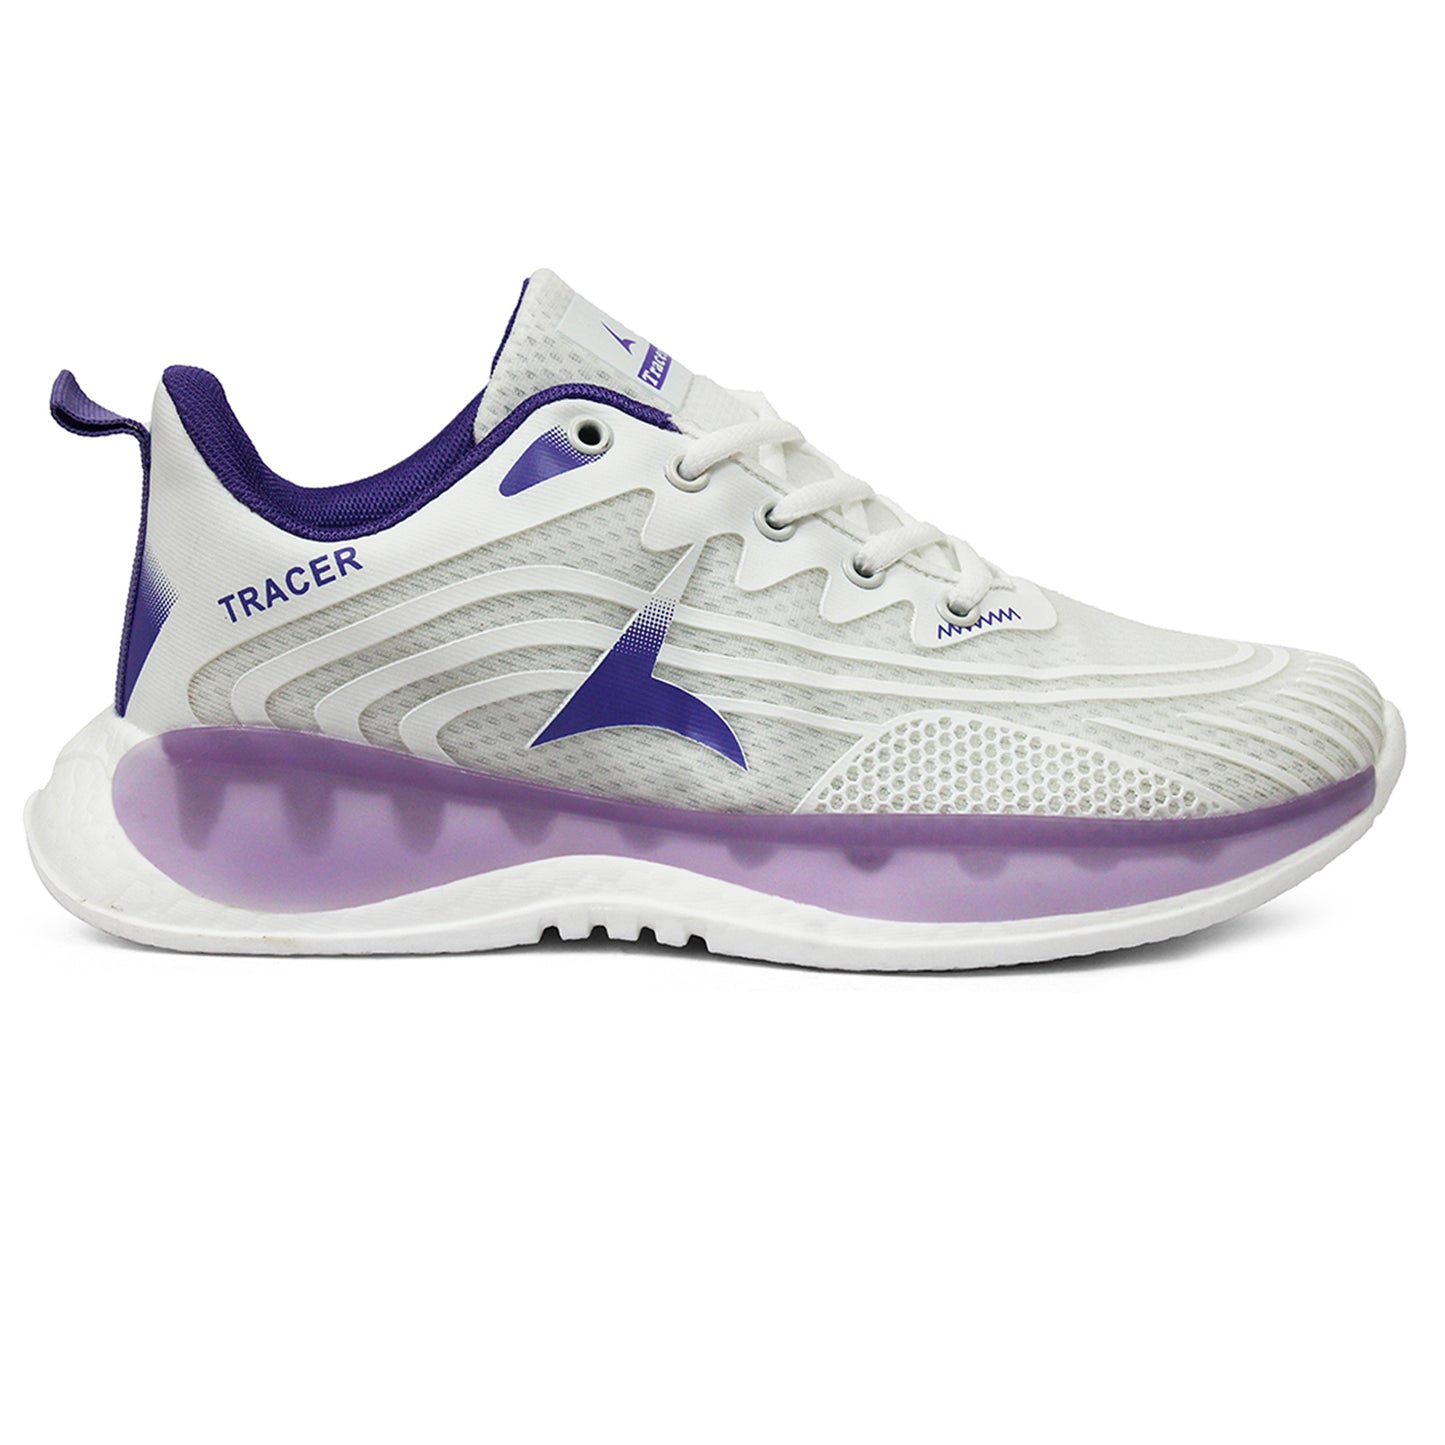 Women's Sneakers Purple